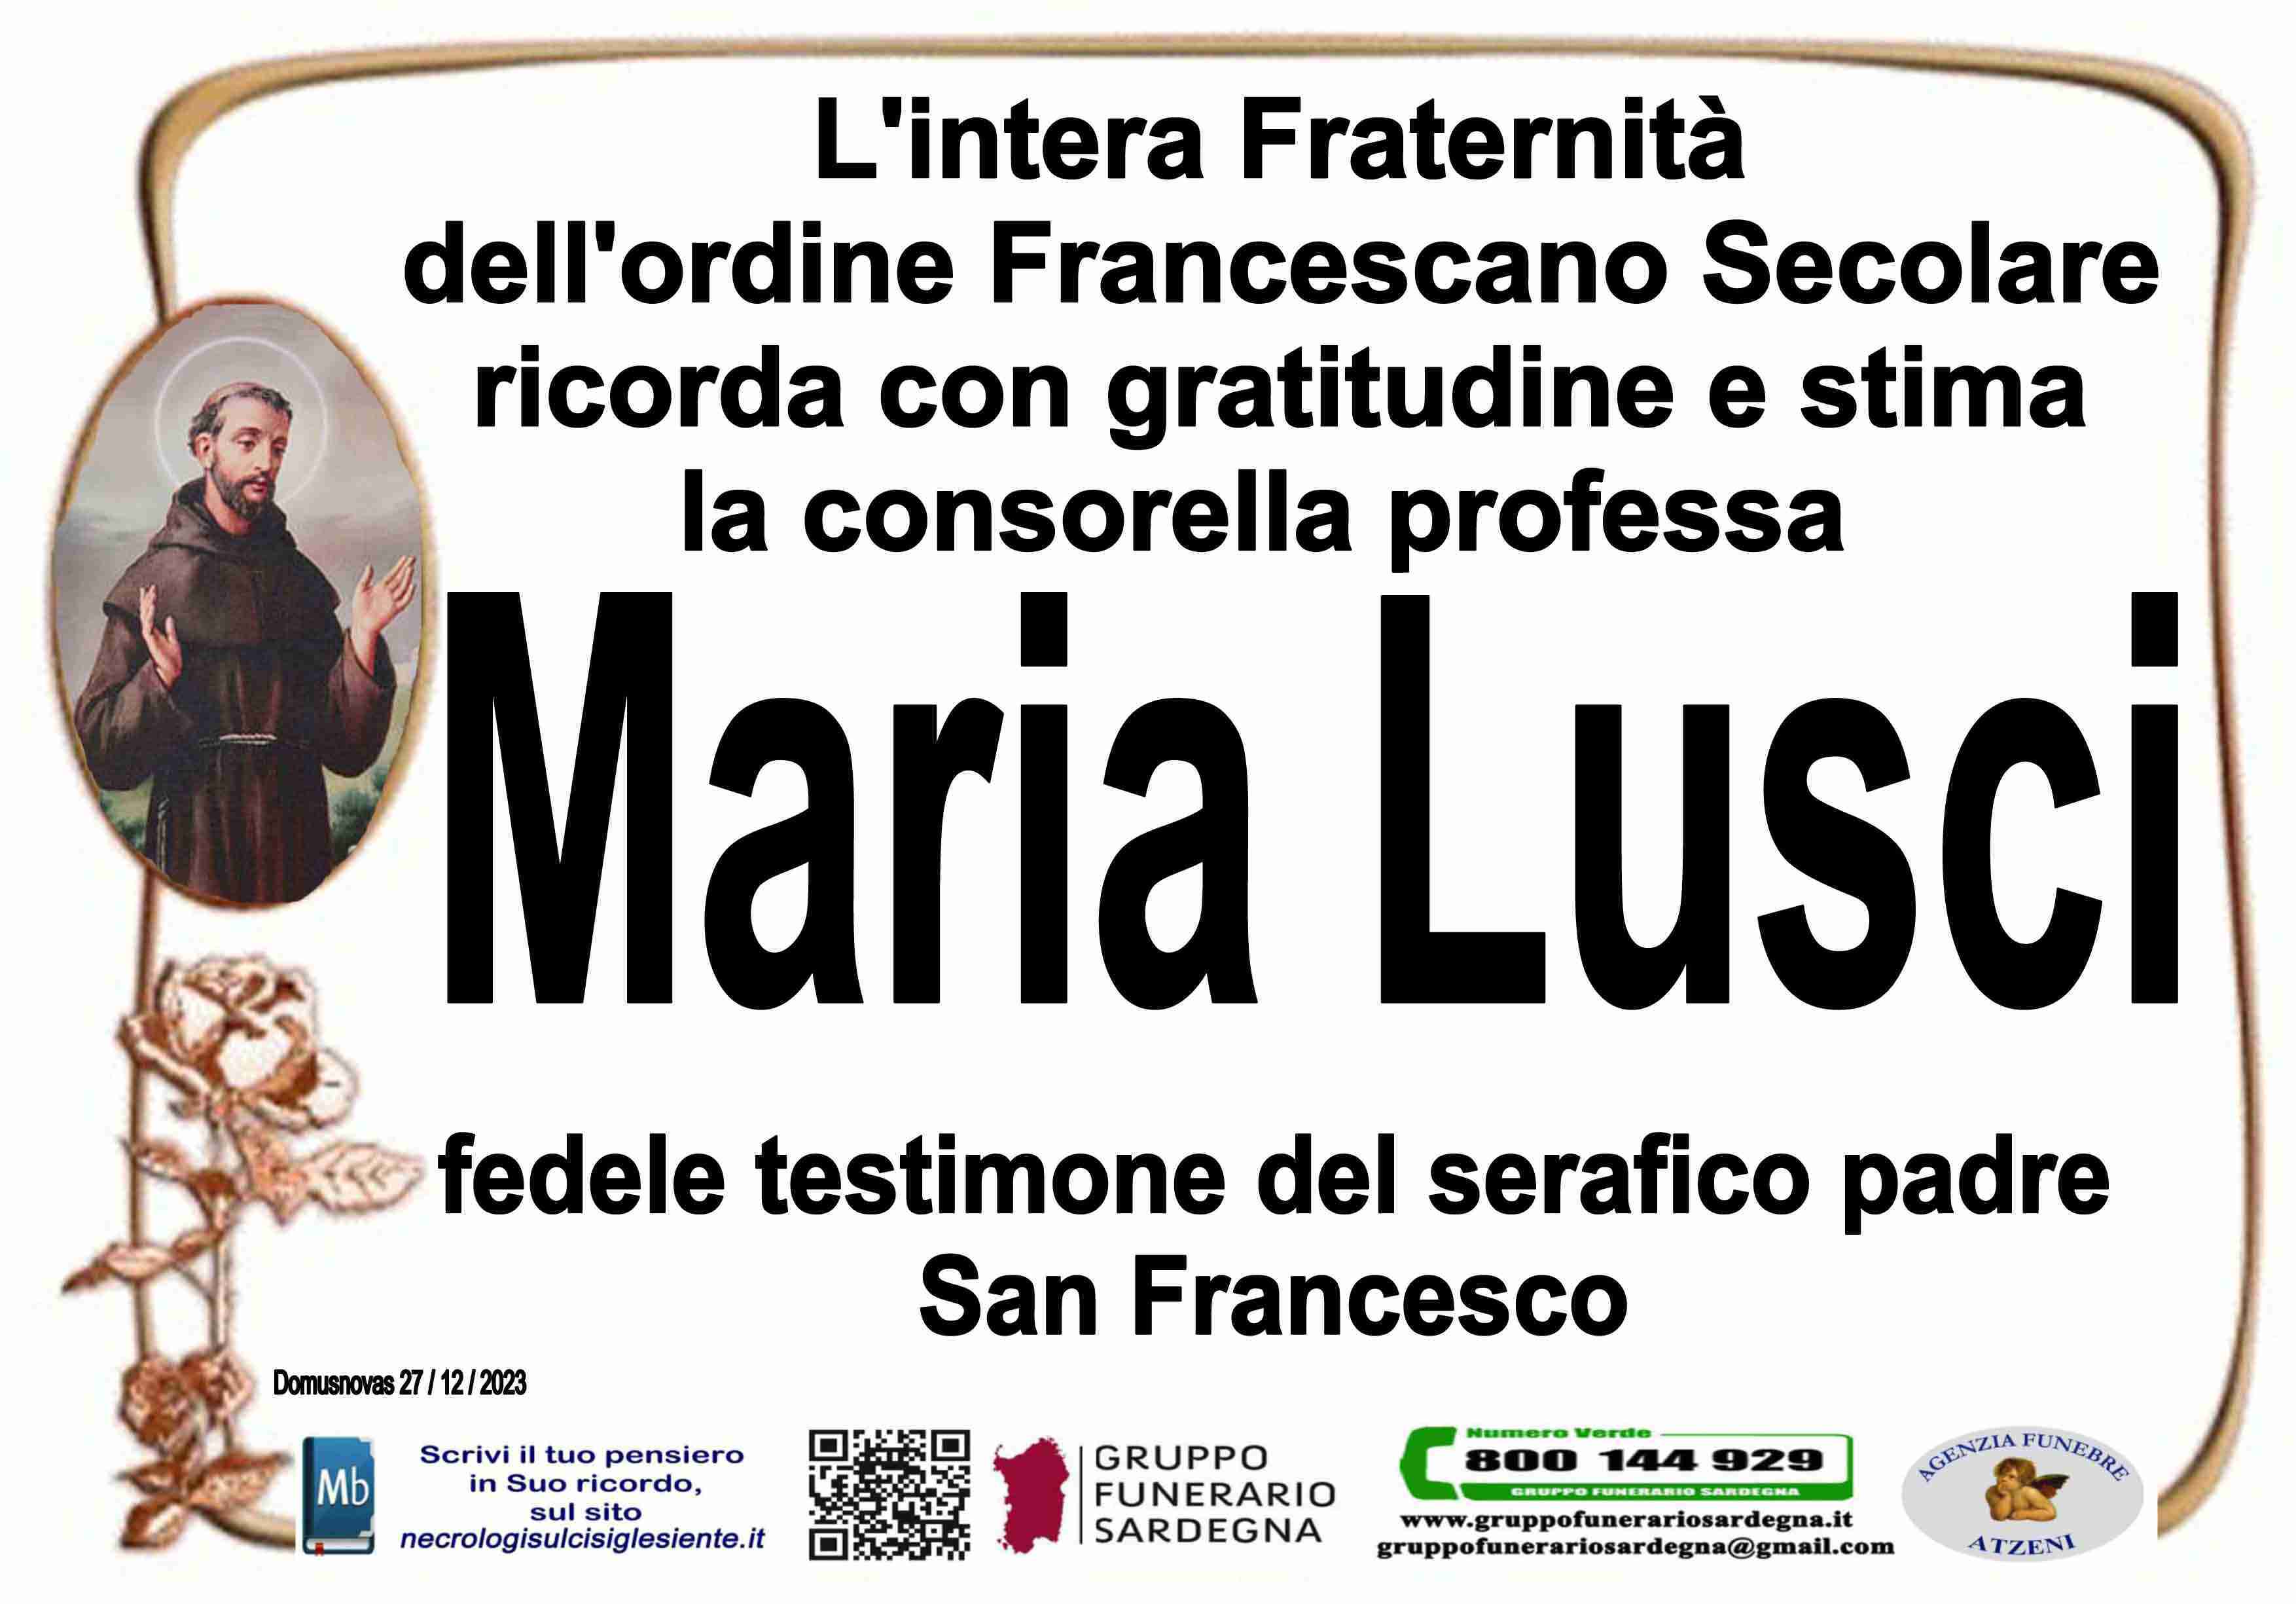 Maria Virginia Lusci